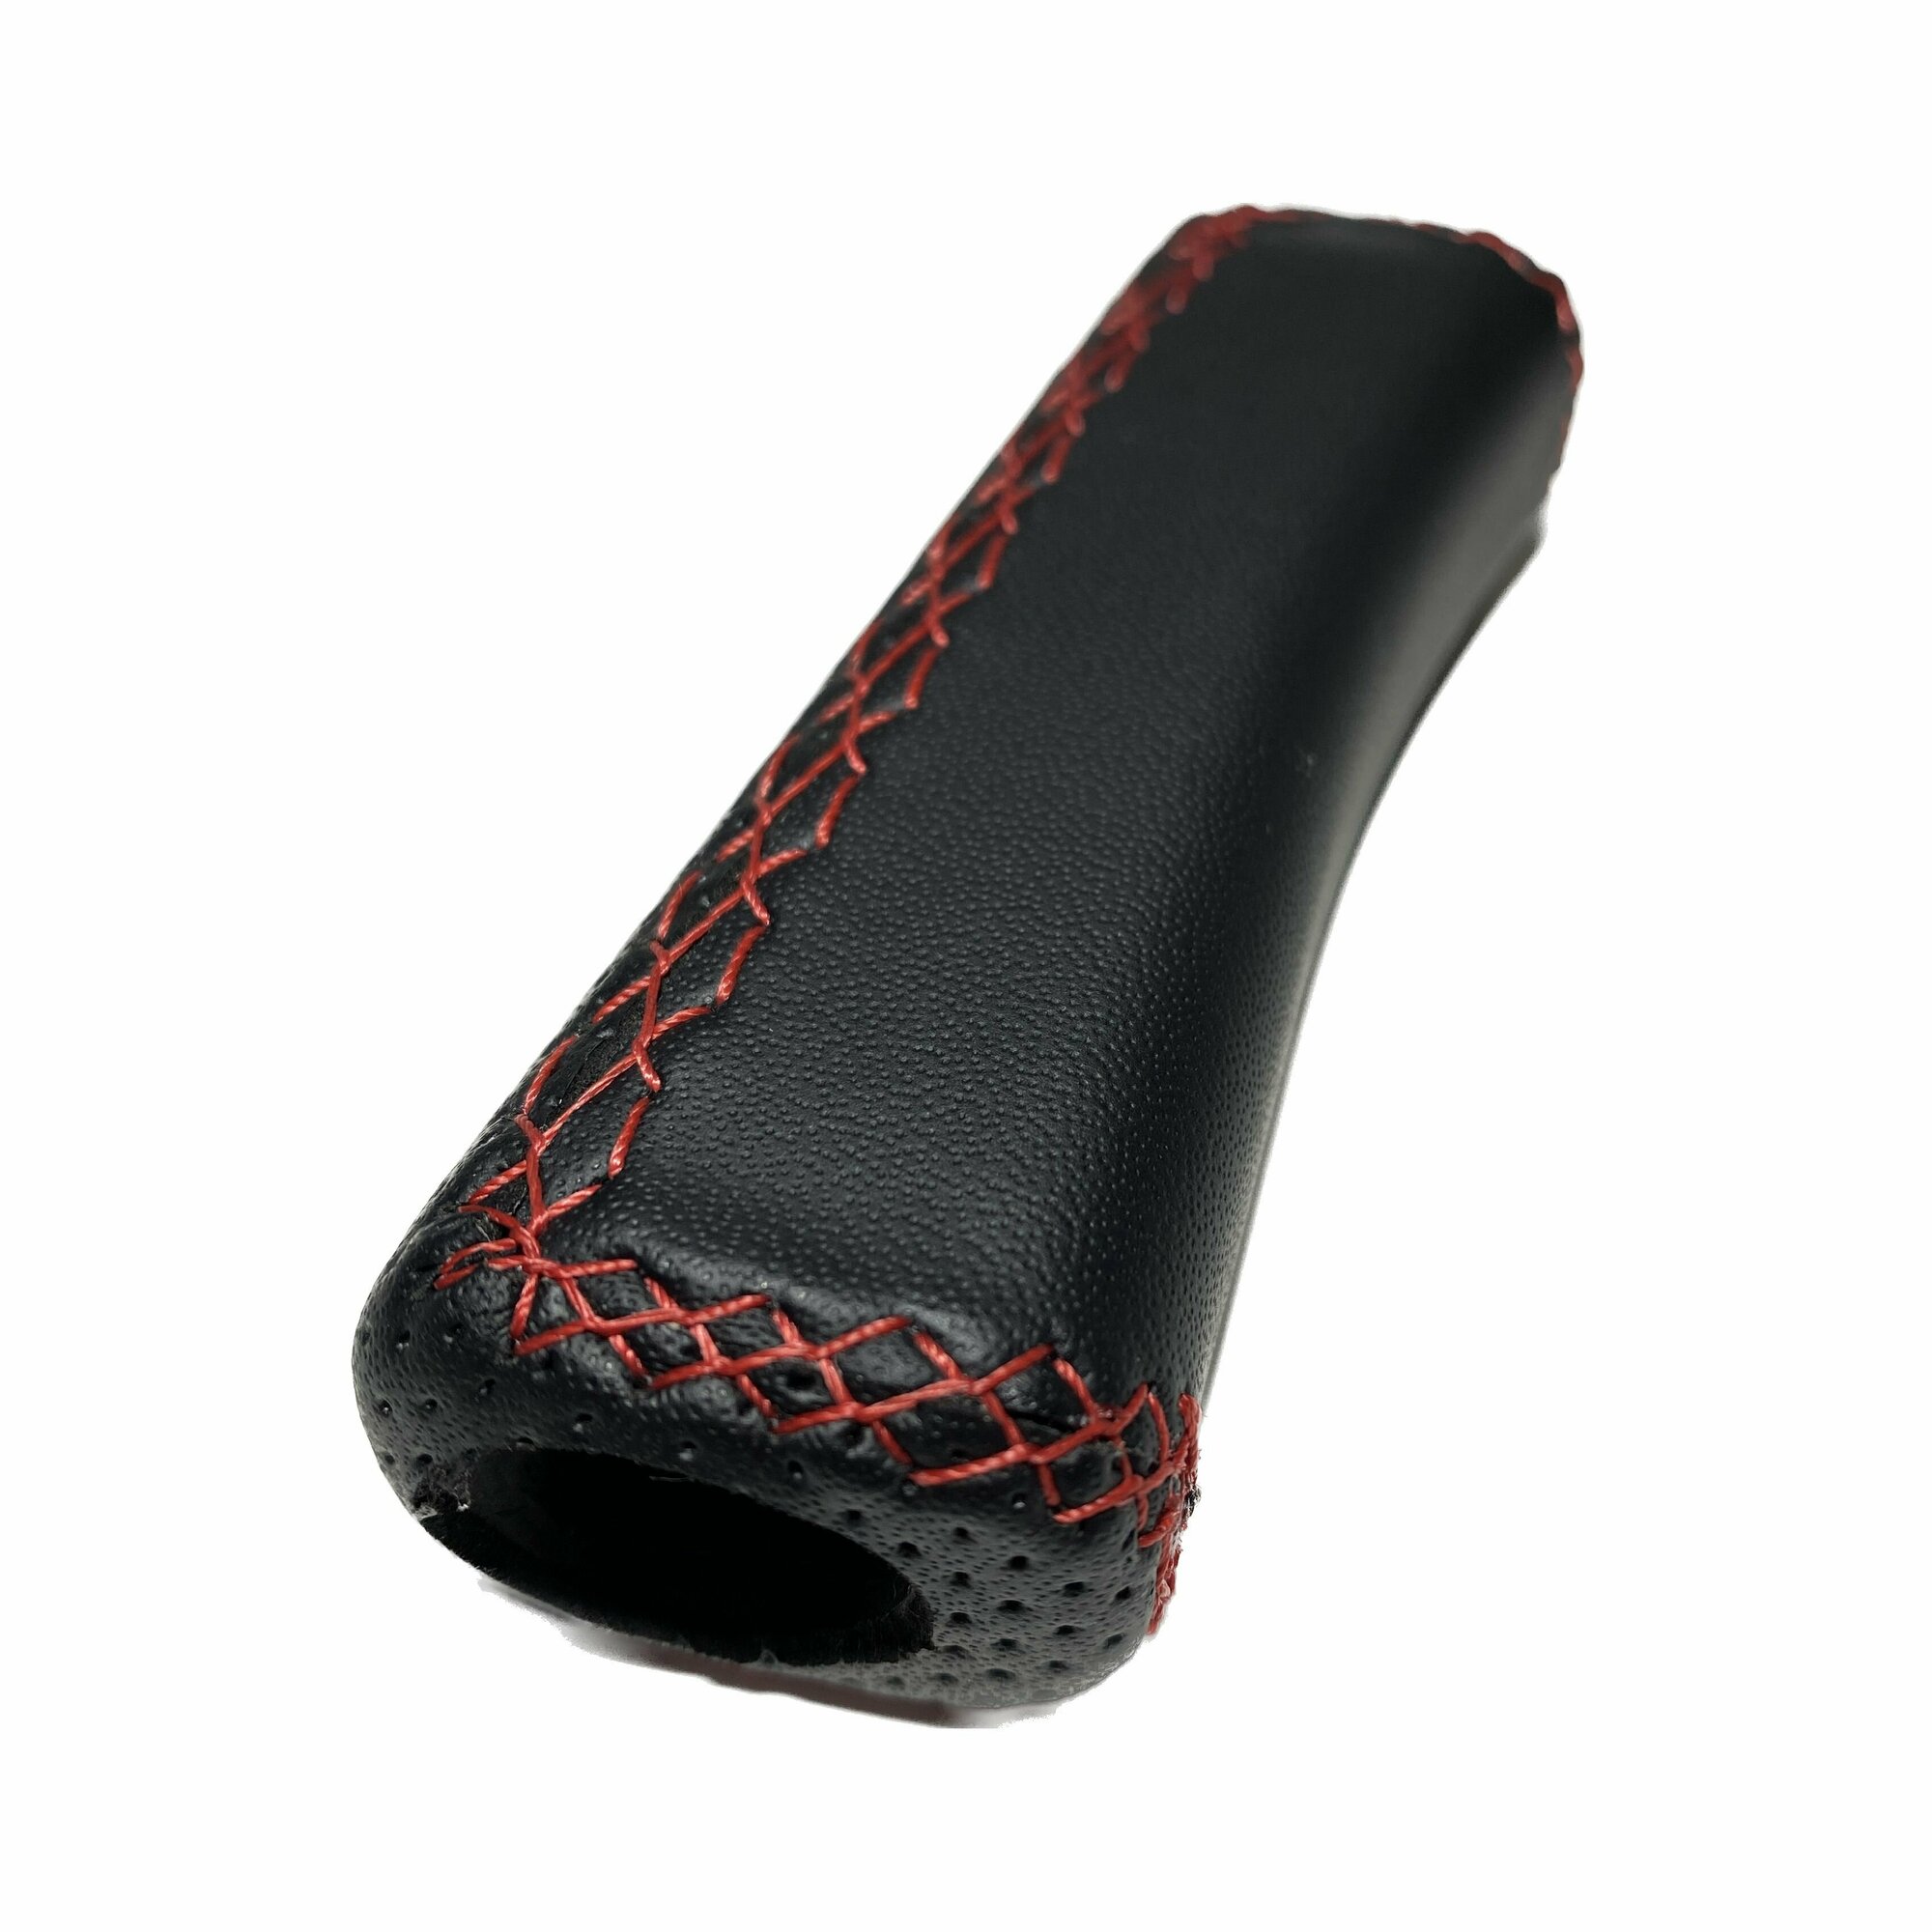 Ручка ручного тормоза (ручника) с Красной строчкой для LADA ВАЗ GRANTA KALINA PRIORA NIVA 4x4 2101-0721092108 перетянутая в экокожу "Premium"